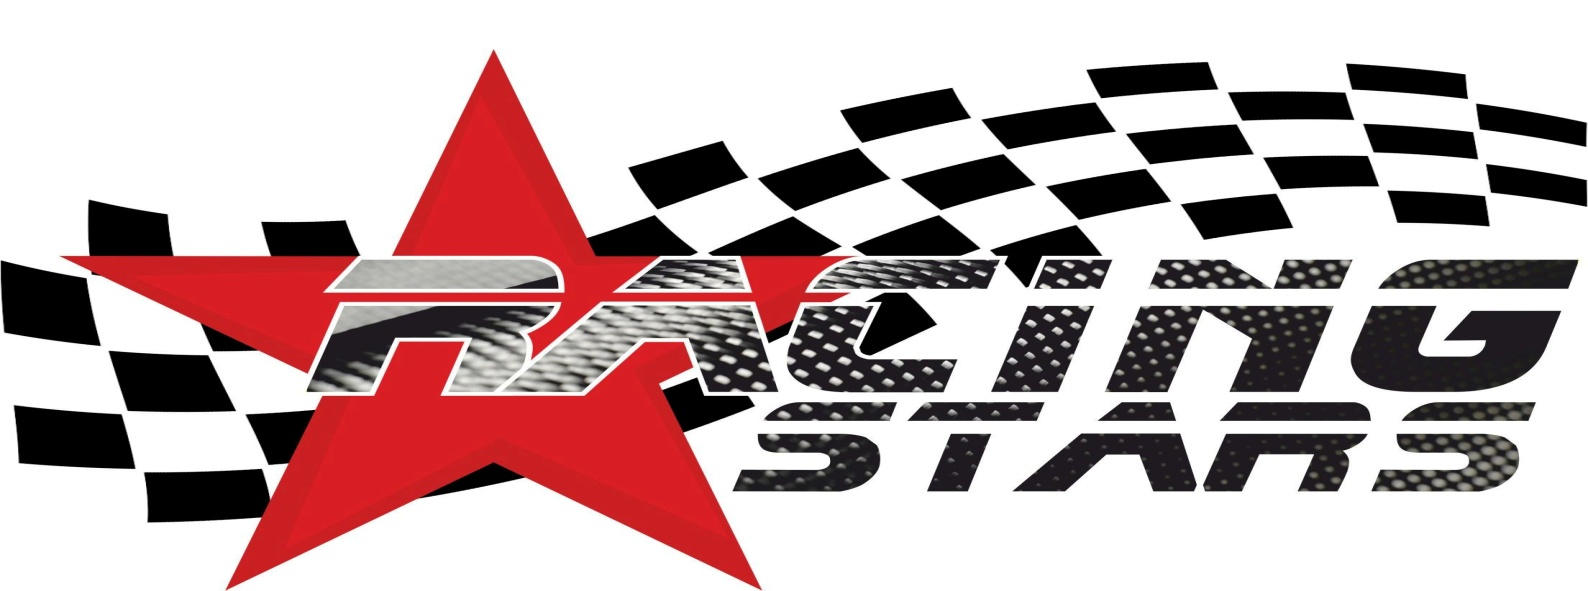 VERSENYKIÍRÁS Racing Stars Amatőr Tehetségkutató versenysorozat III. futama 2015.06.21. 1. Időbeosztás és helyszínek 2. Rendezés 3. Rendező 4. Pálya 5. A verseny tisztségviselői 6.